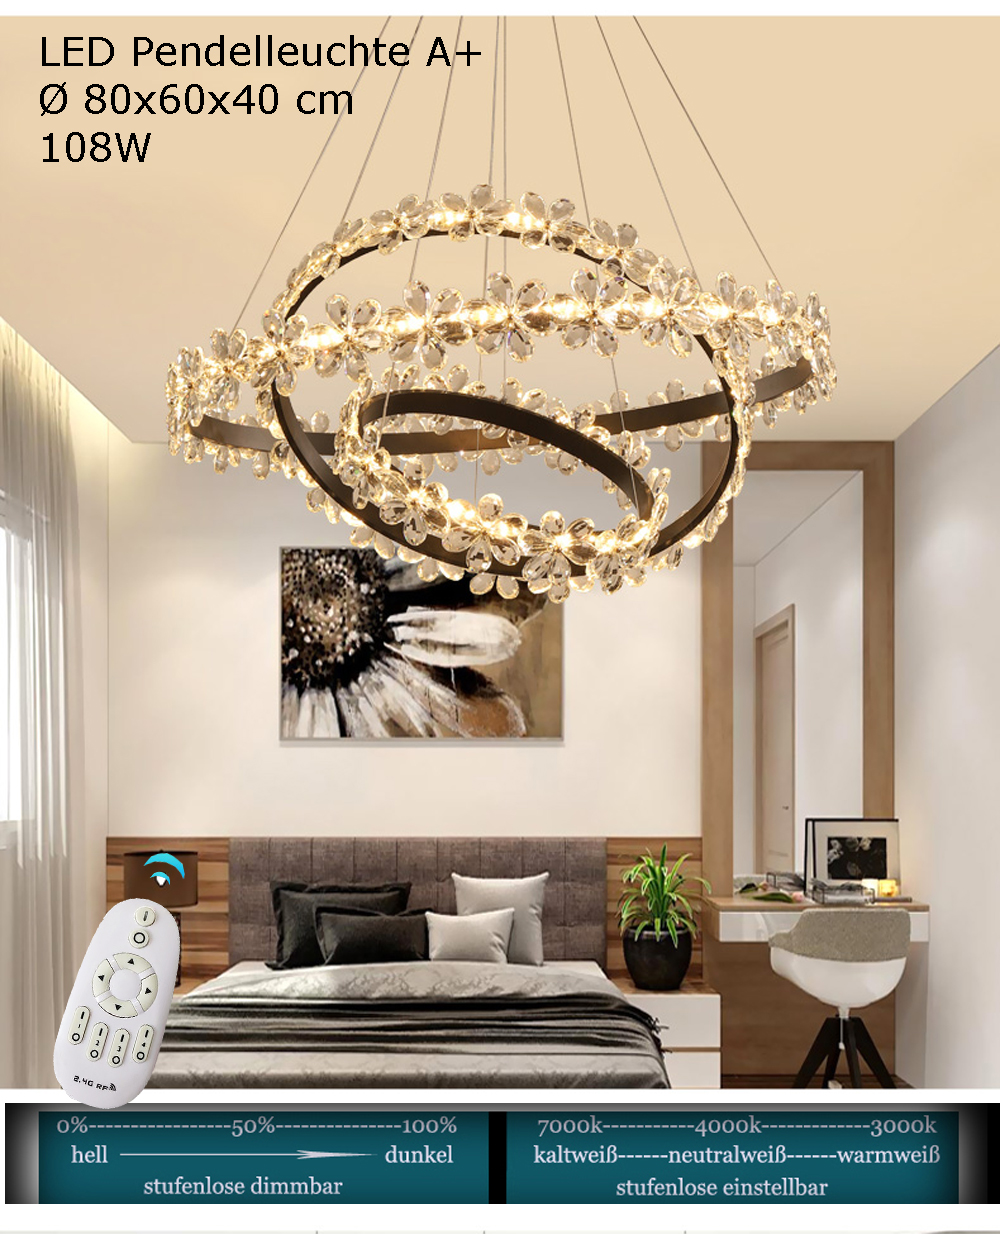 Pendelleuchte mit Fernbedienung Luxus LED | A eBay einstellbar helligkeit XW813 Neu